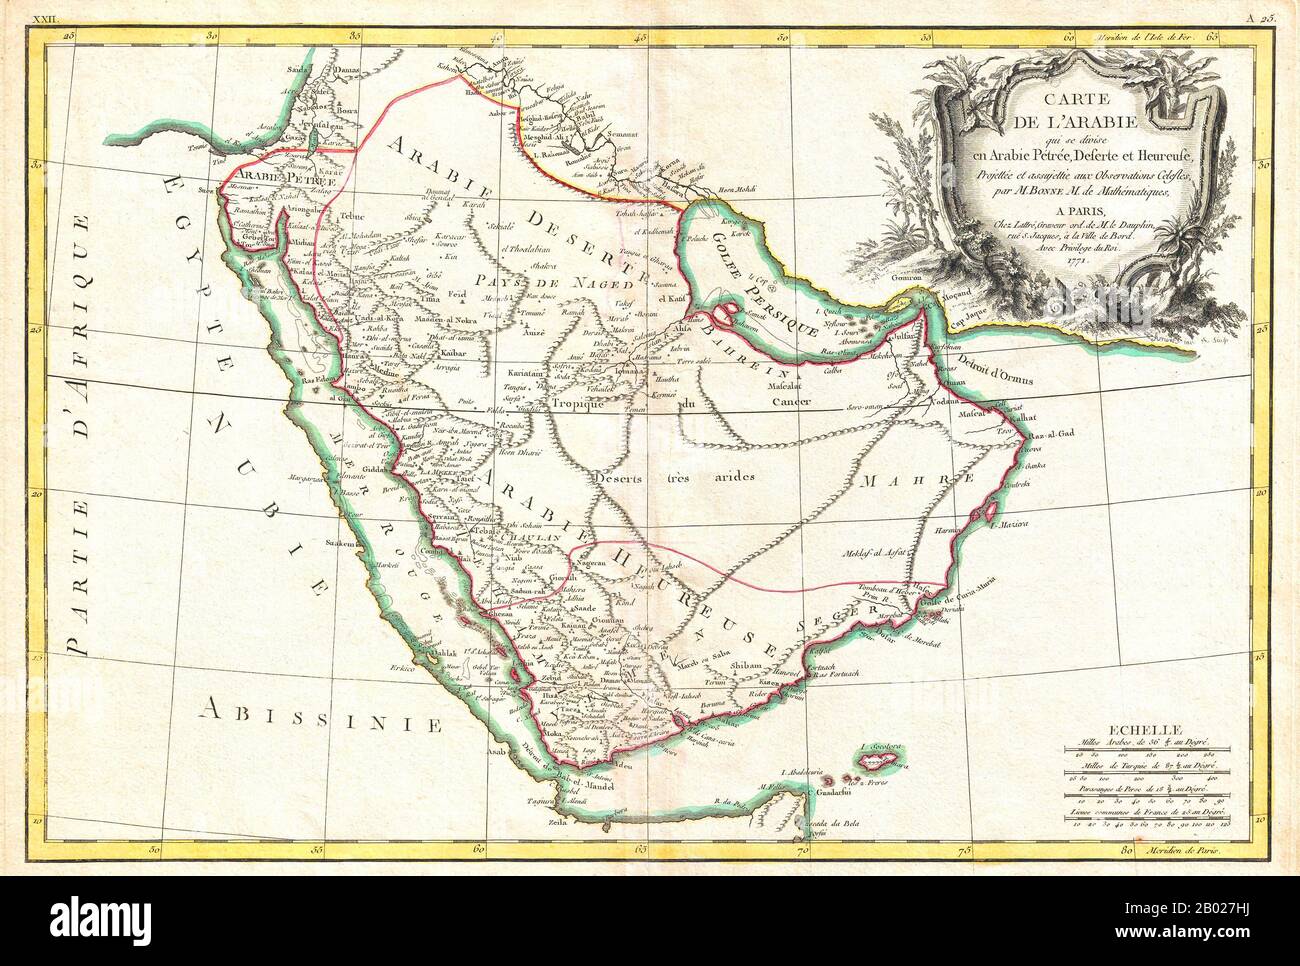 Carte décorative 1771 de Rigobert bonne dans la péninsule arabique. Couvre de la Méditerranée à l'Océan Indien et de la Mer Rouge au Golfe Persique. Comprend les nations modernes de l'Arabie saoudite, d'Israël, de la Jordanie, du Koweït, de l'Iraq, du Yémen, d'Oman, des Émirats arabes Unis et de Bahreïn. Il s'agit de Mt. Sinaï, la Mecque et Jérusalem ainsi que de nombreuses autres villes et oasis désertiques, et note également de nombreux hauts-fonds, récifs et autres dangers dans la mer Rouge et le golfe Persique. Il y a un grand cartouche de titre décoratif dans le quadrant supérieur droit. Tiré par R. bonne en 1771 pour publication comme plaque n Banque D'Images